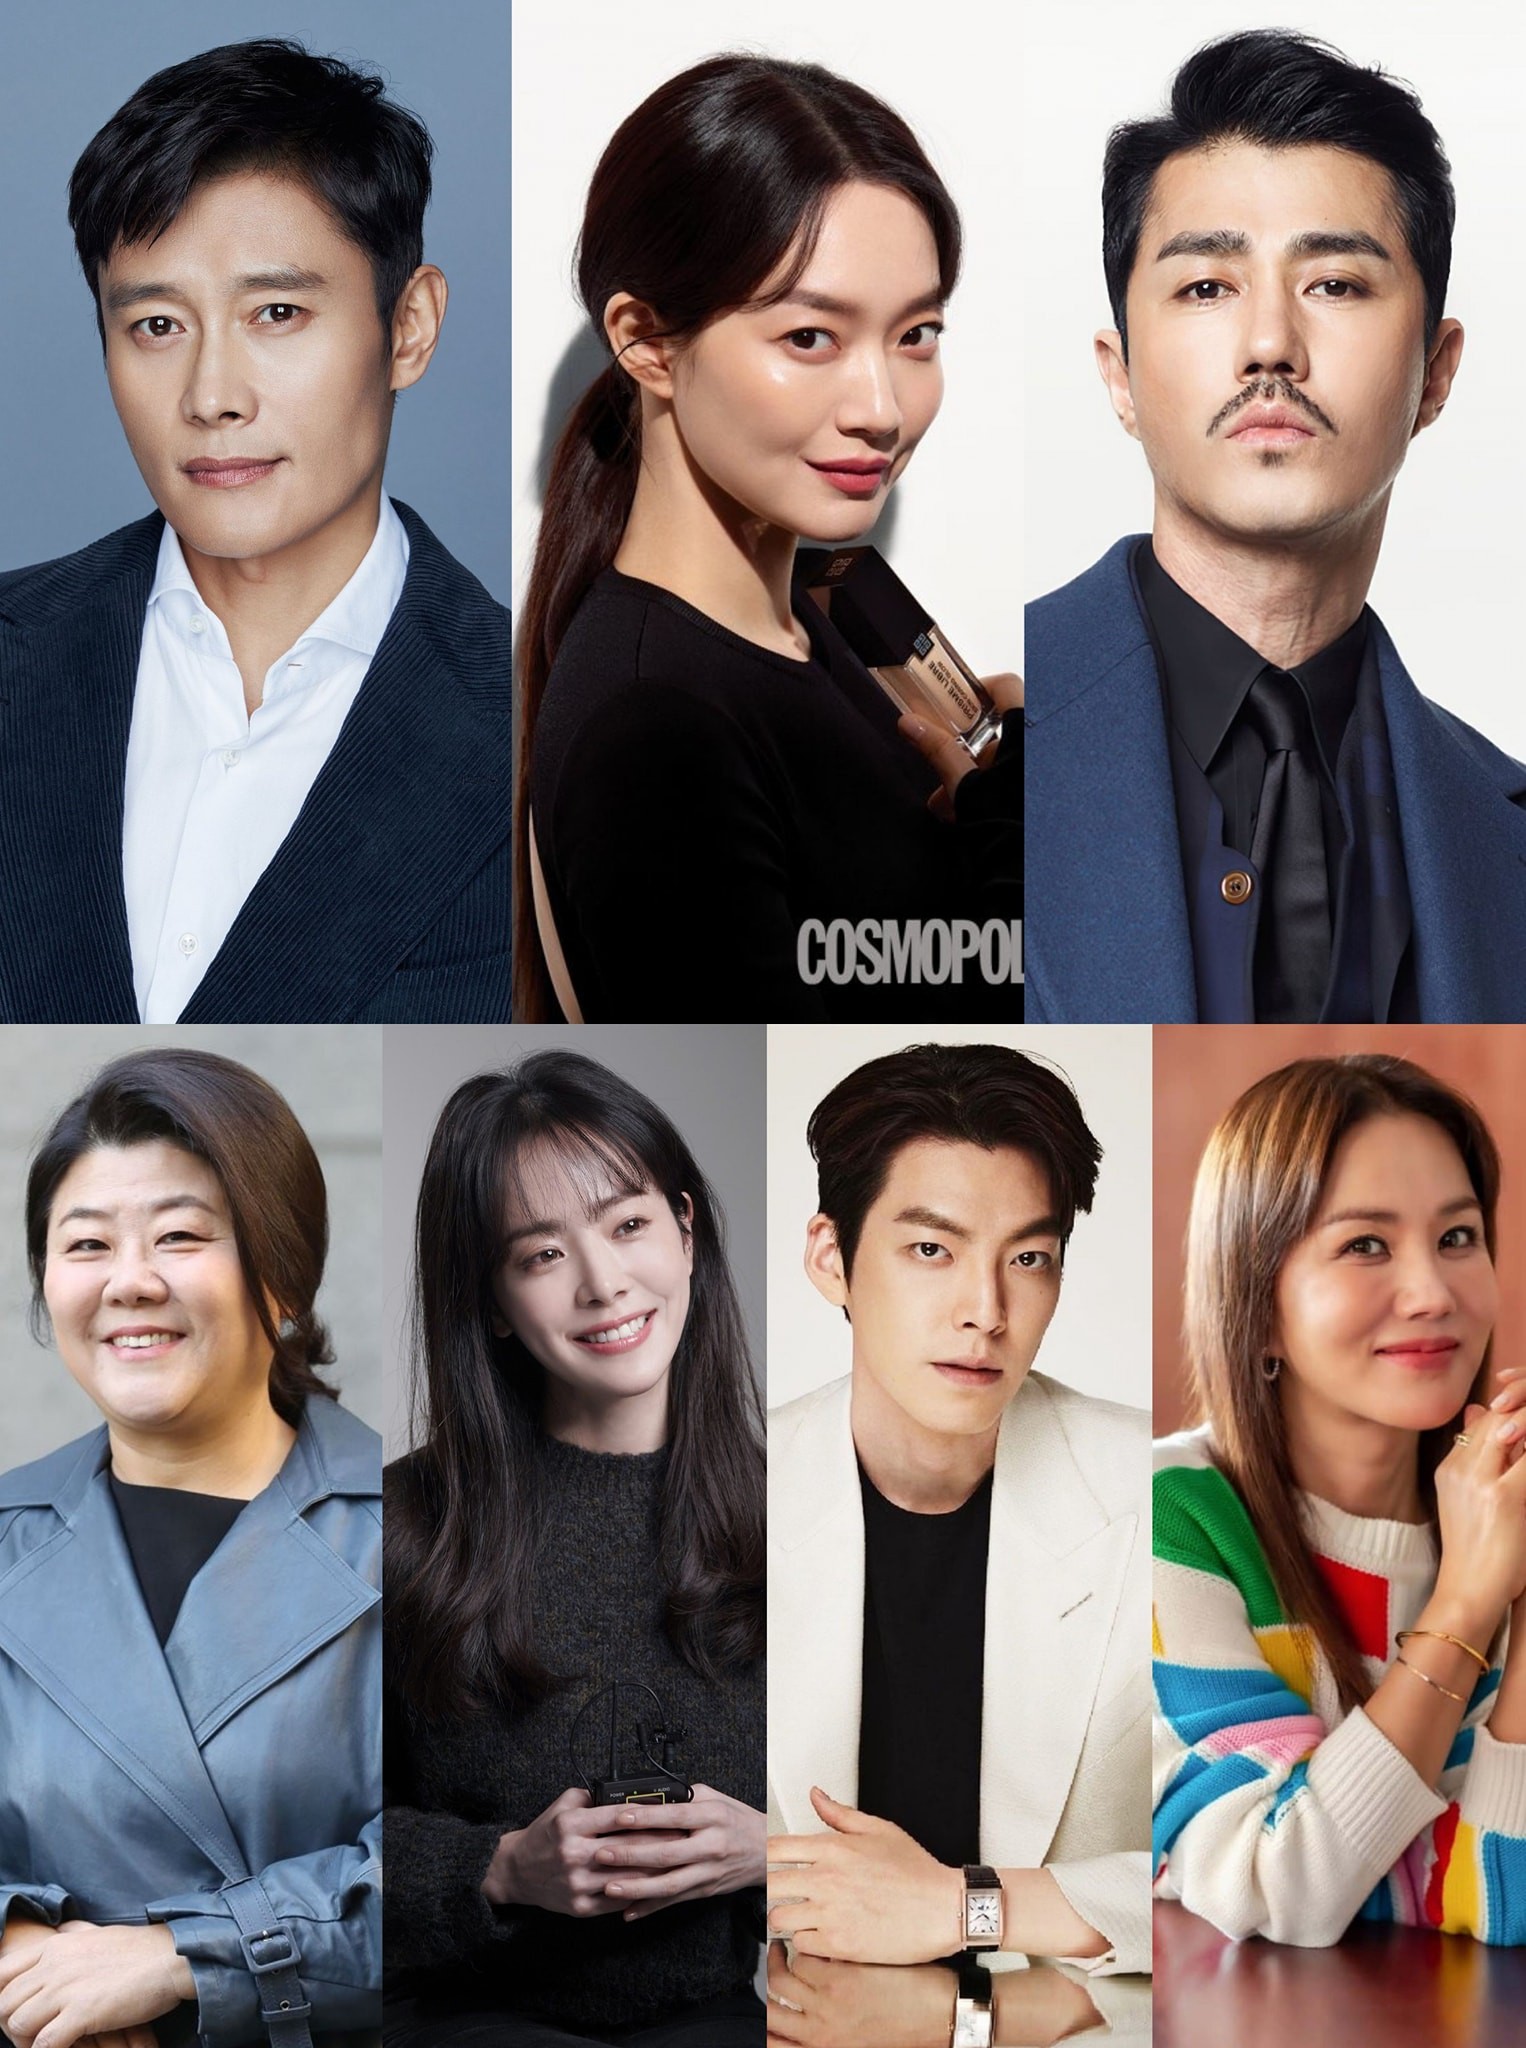 Phim bom tấn OUR BLUES tiết lộ dàn diễn viên đình đám: Lee Byung Hyun, Cha Seung Won, Shin Min Ah, Kim Woo Bin, Han Ji Min, Lee Jung Eun và Uhm Jung Hwa  